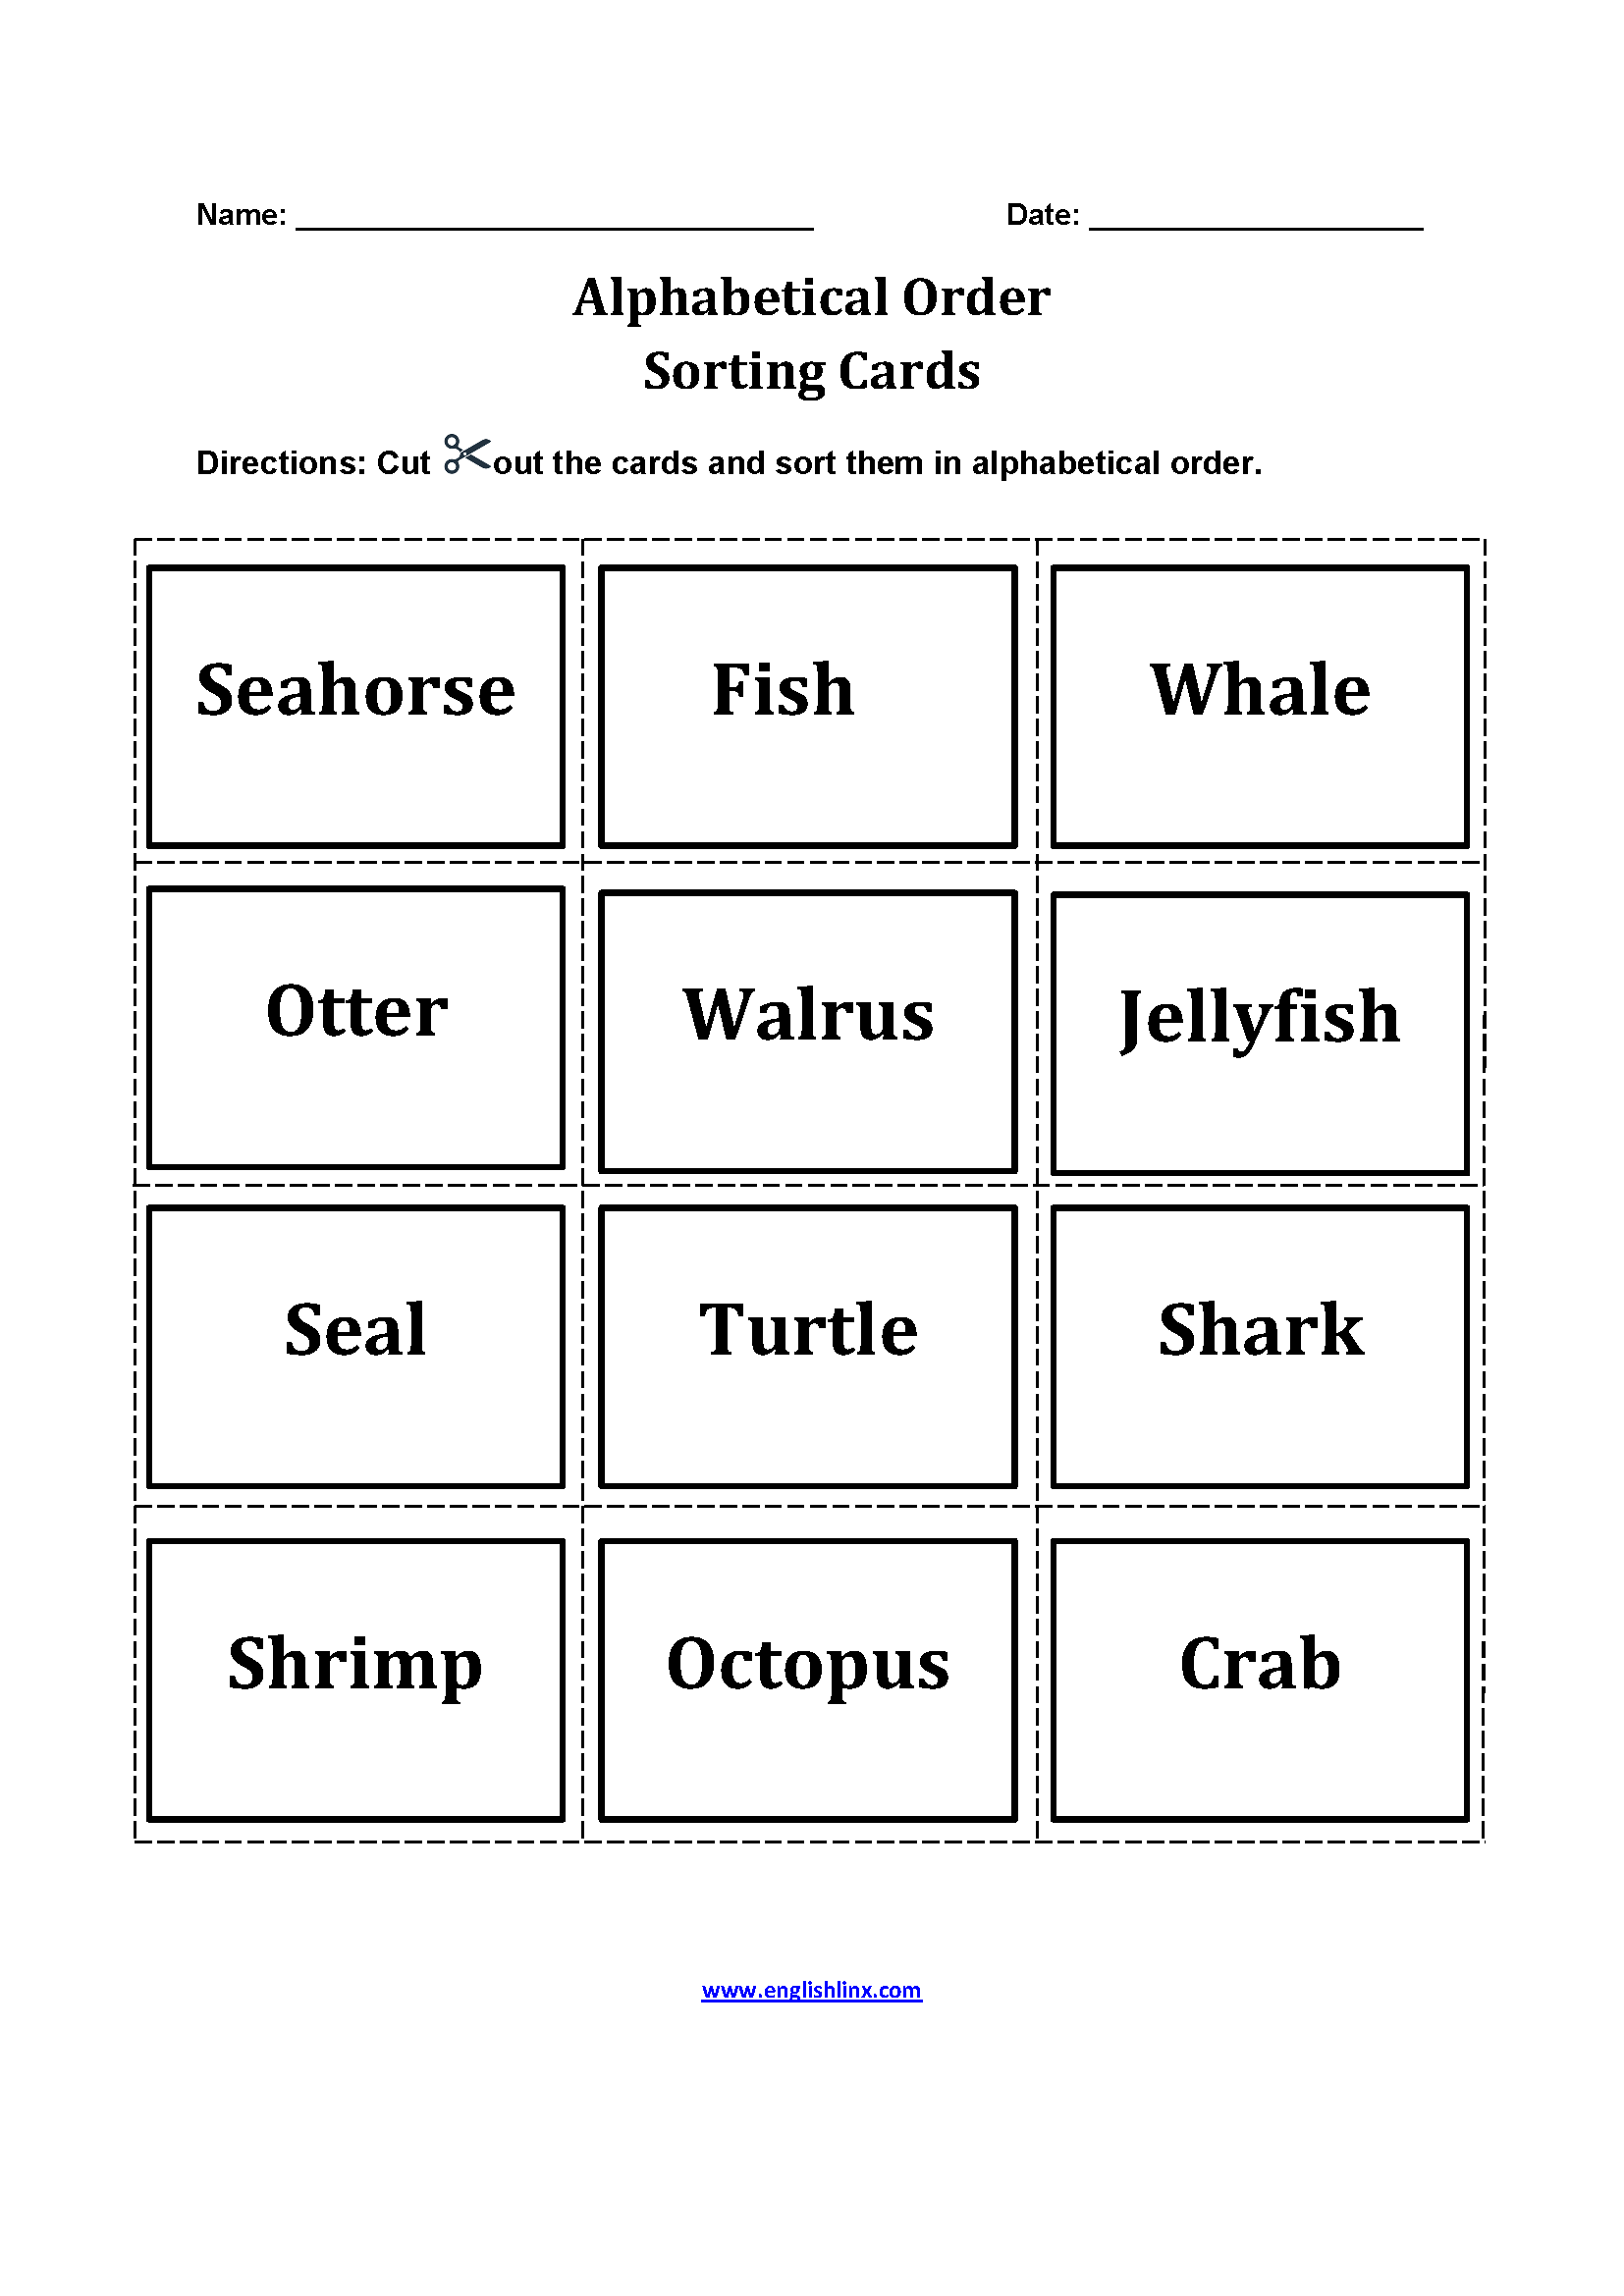 Sorting Cards Alphabetical Order Worksheets